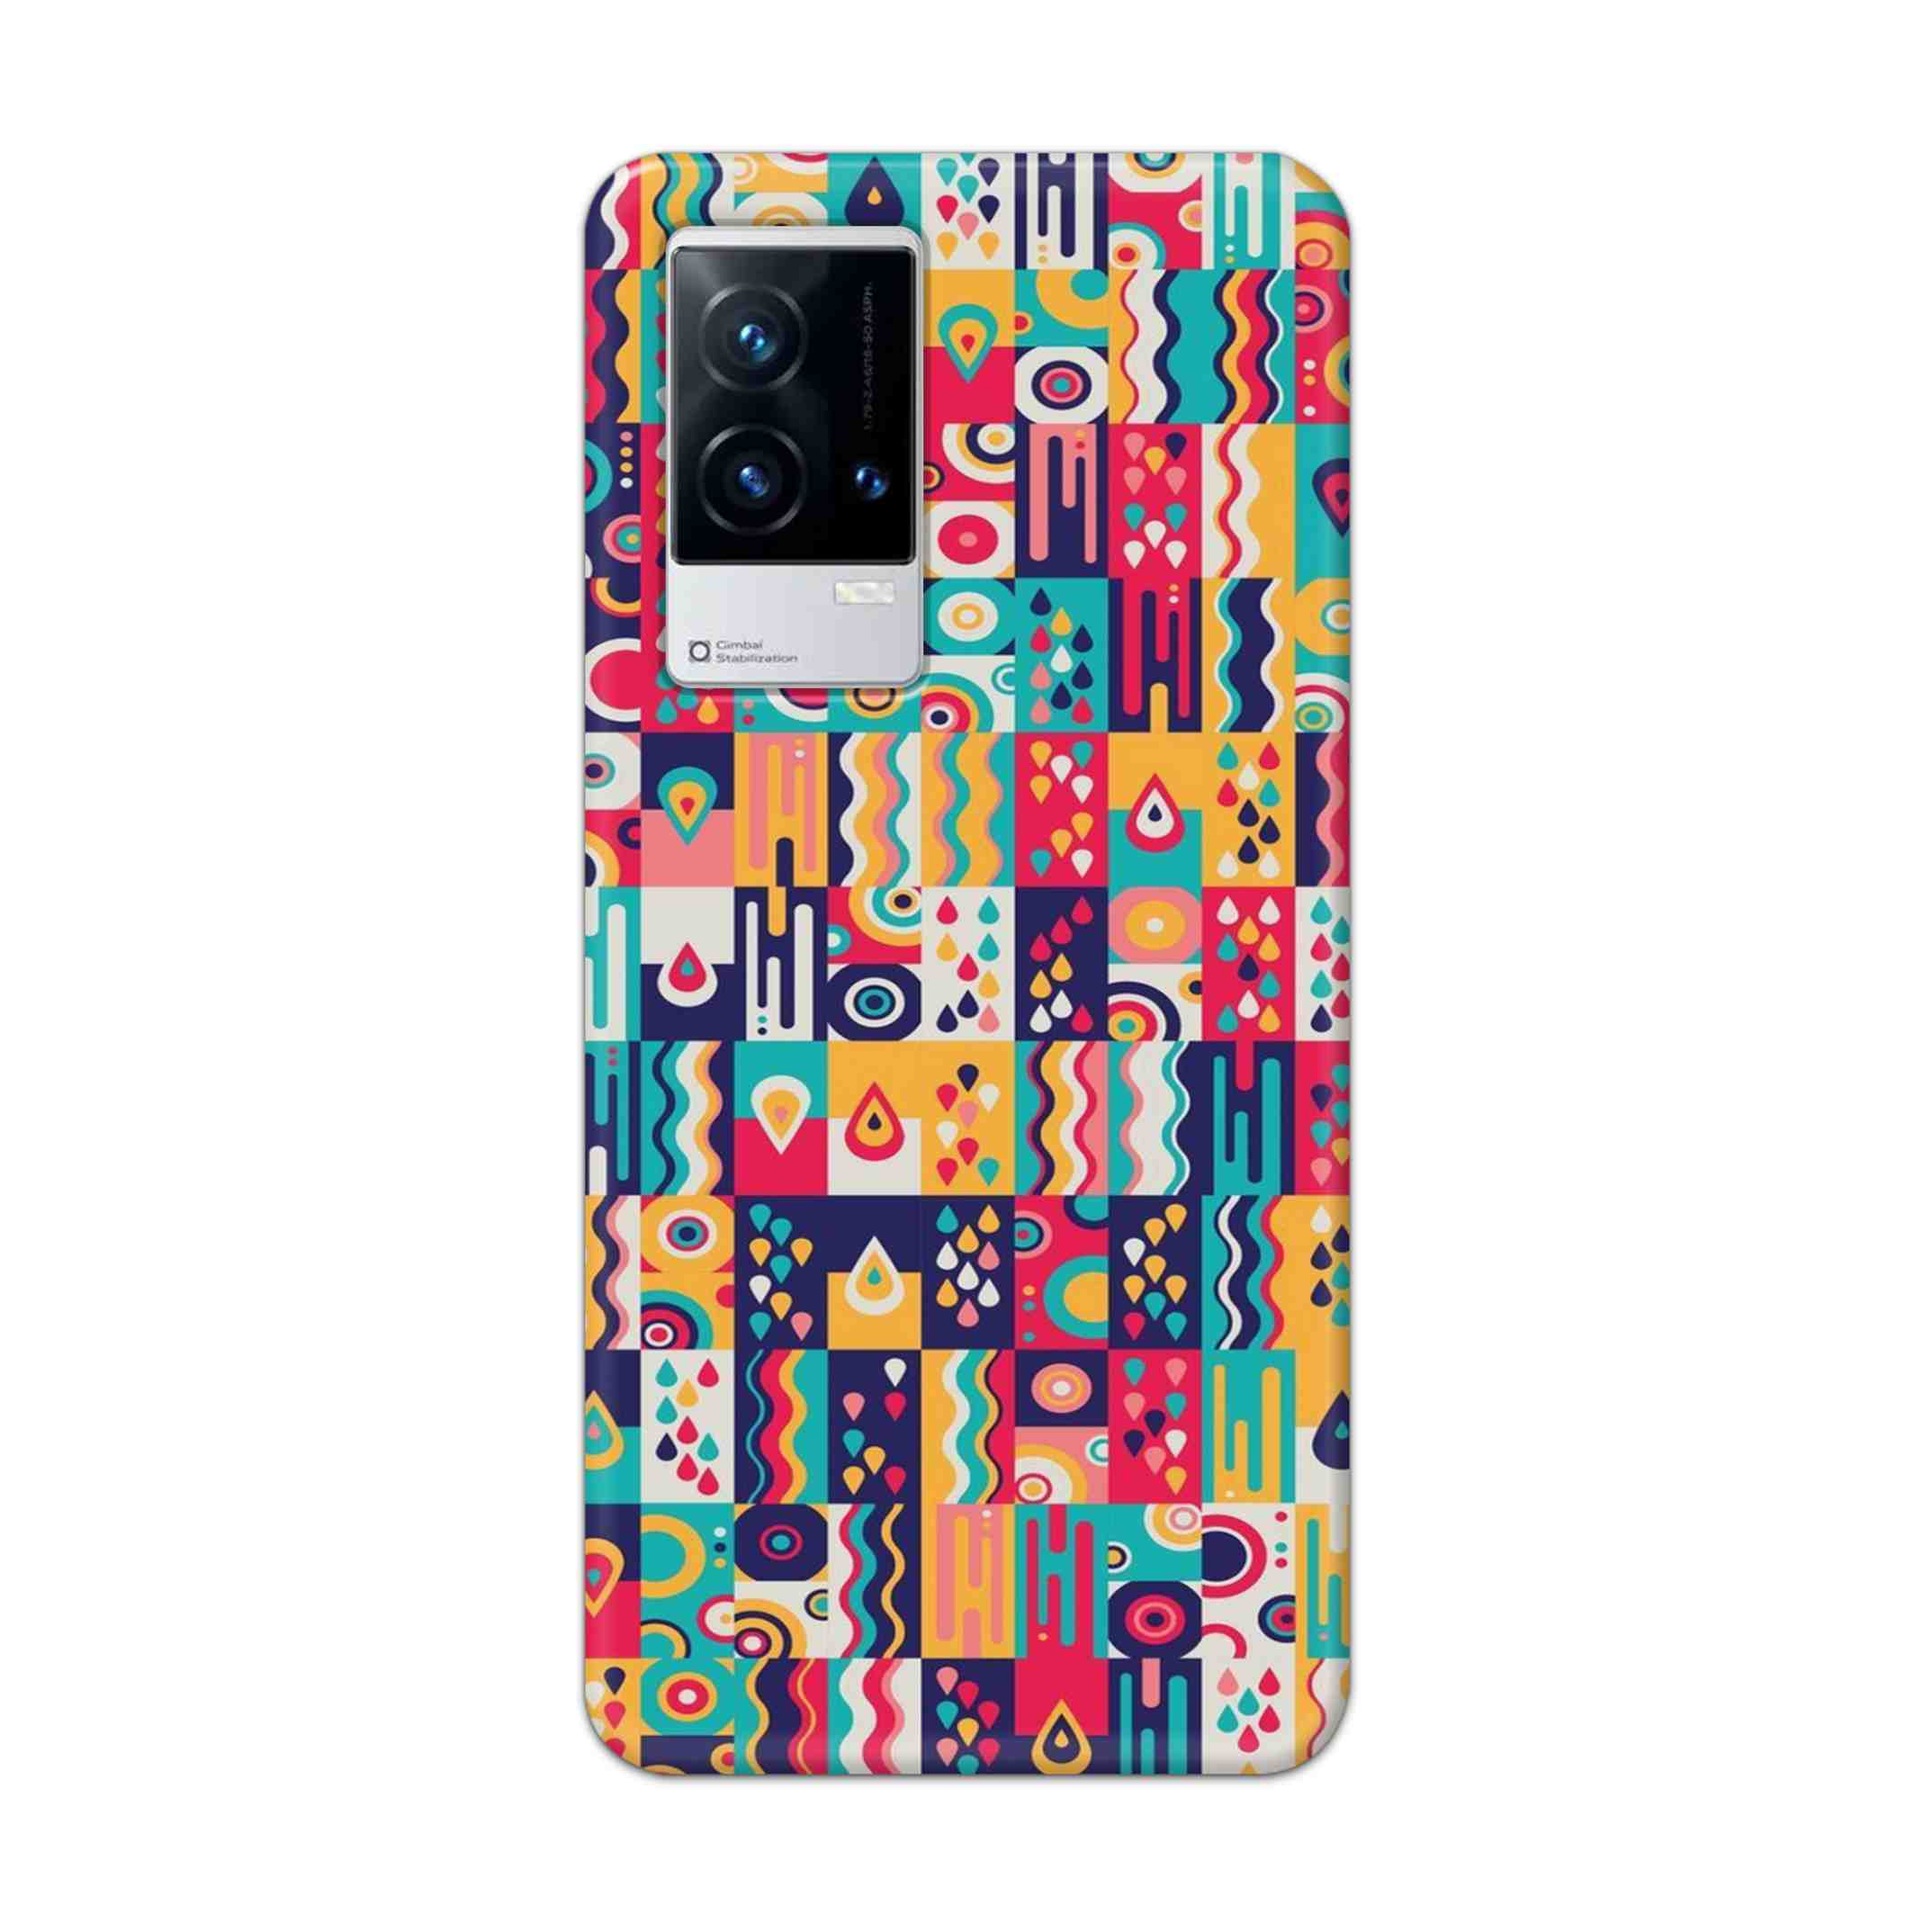 Buy Art Hard Back Mobile Phone Case Cover For Vivo iQOO 9 5G Online